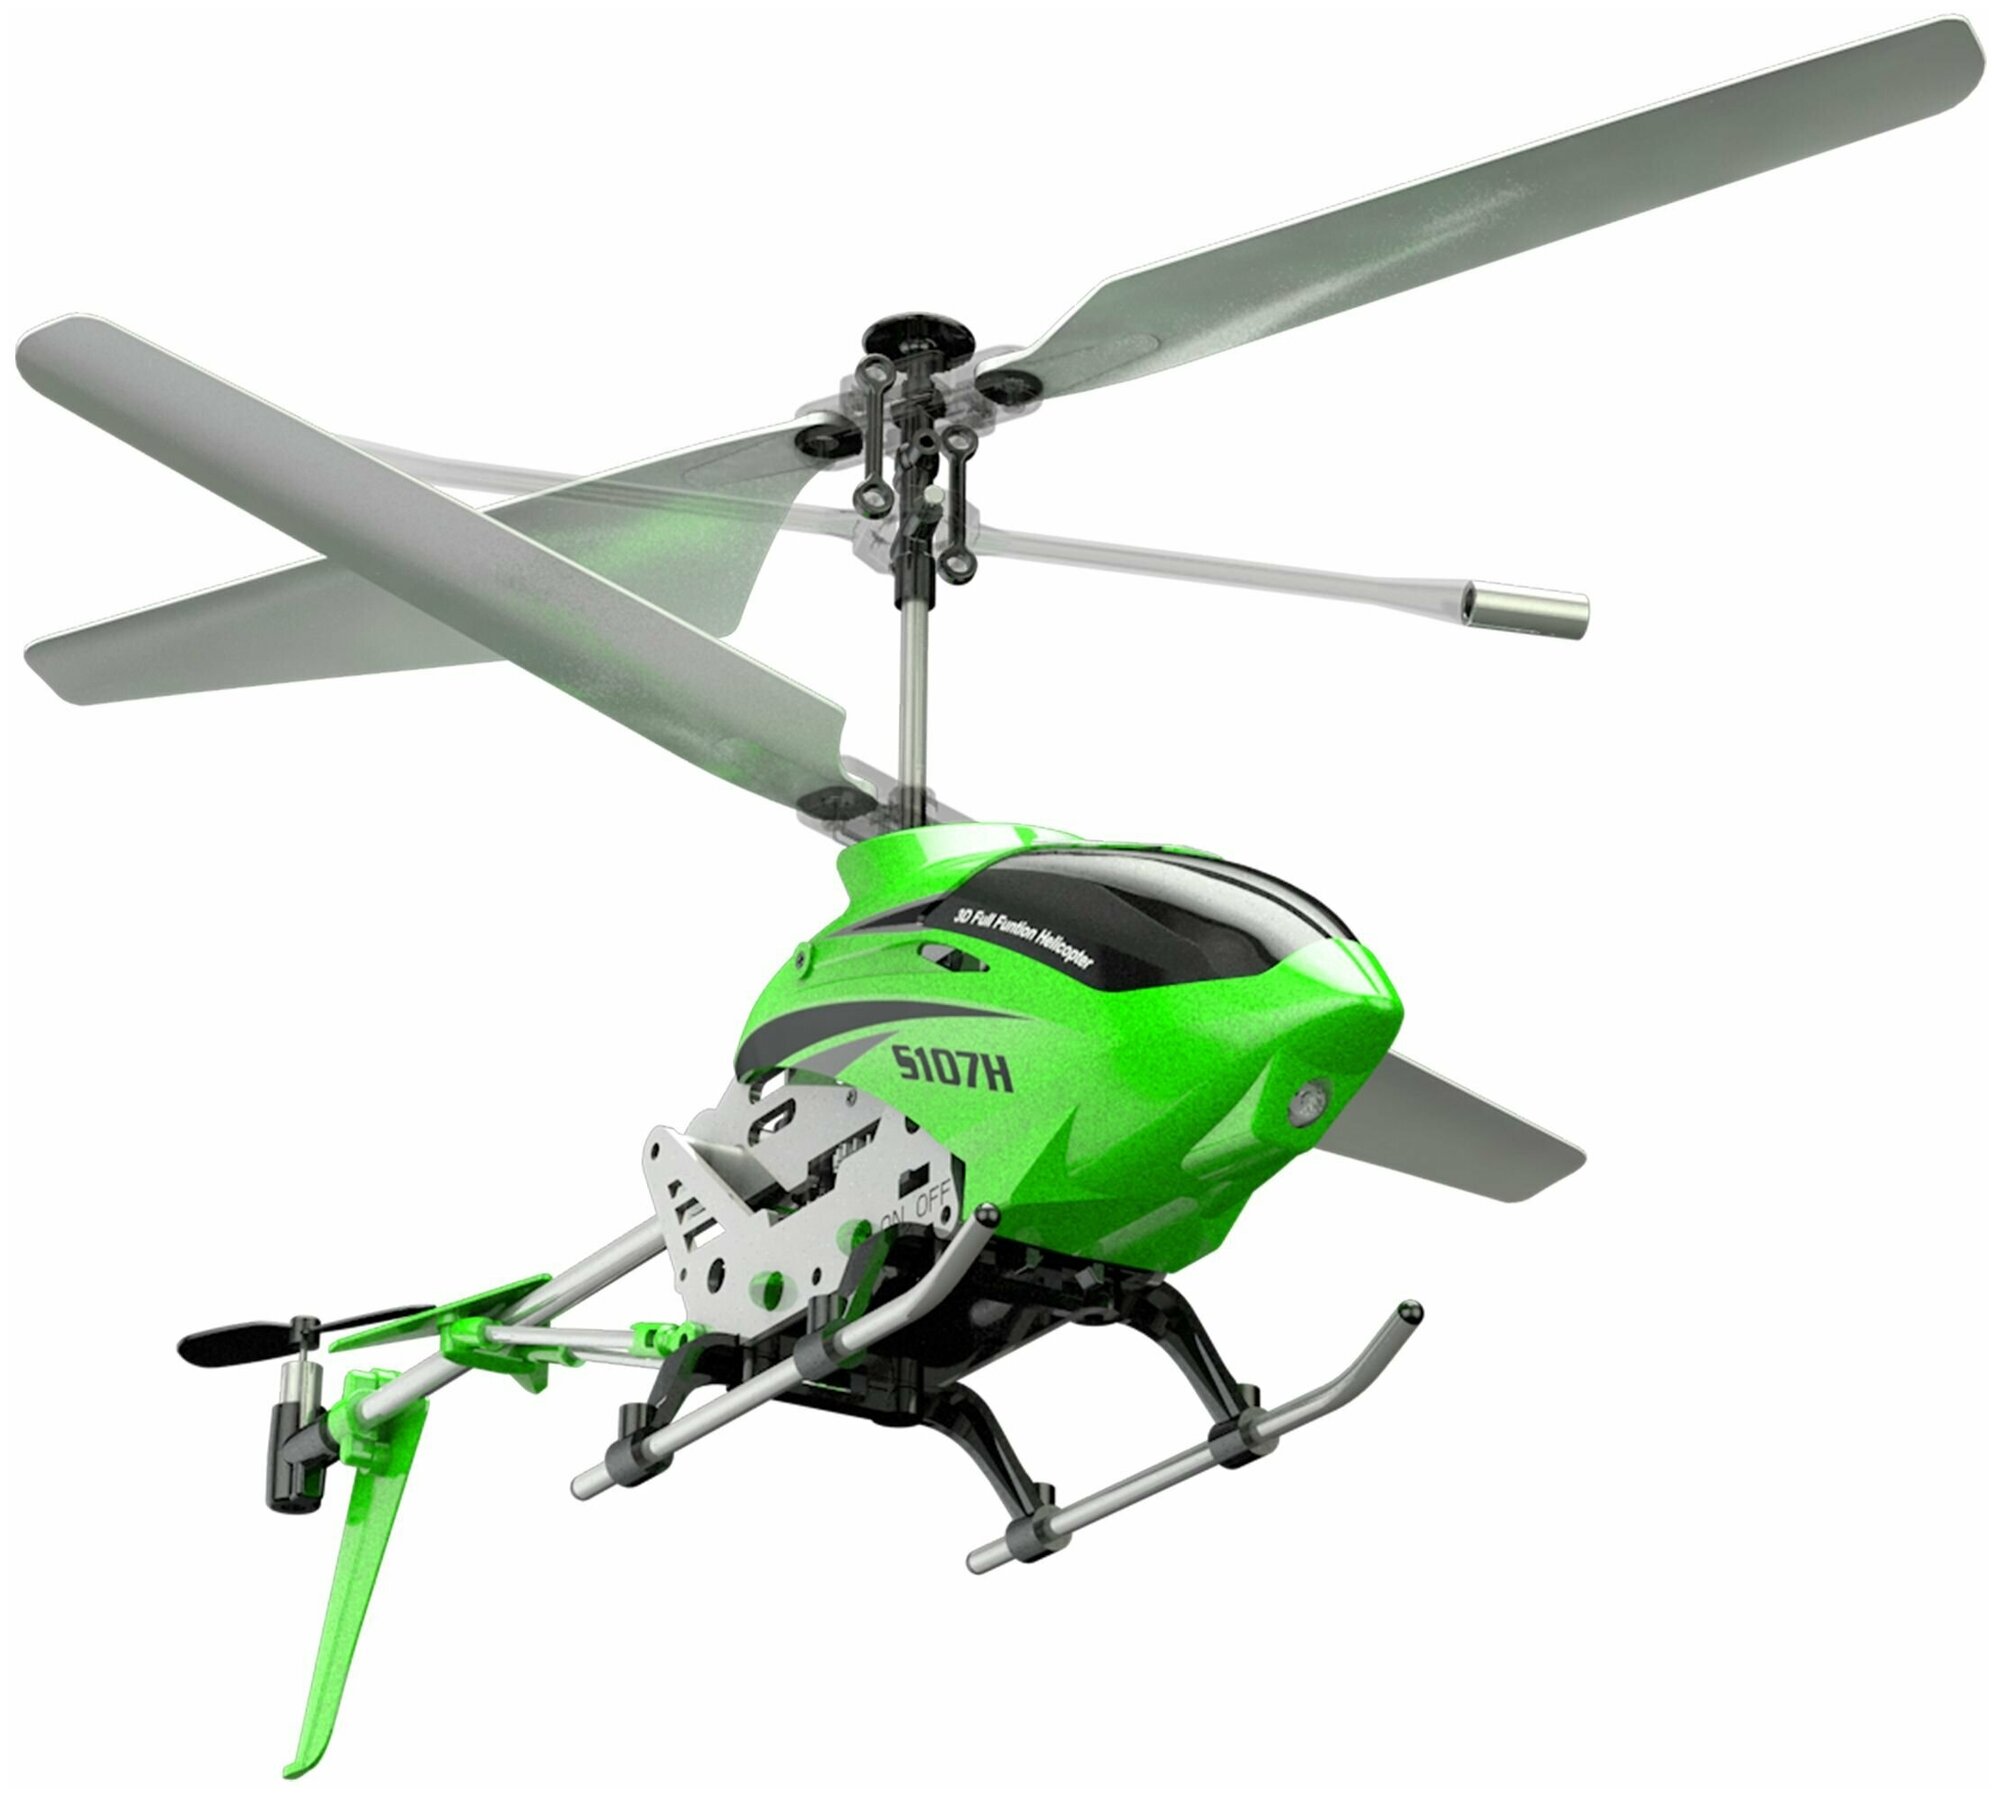 Радиоуправляемые вертолеты Bambi Радиоуправляемый вертолет Syma S107H Wind Hawk 2.4G с функцией зависания для детей, зеленый